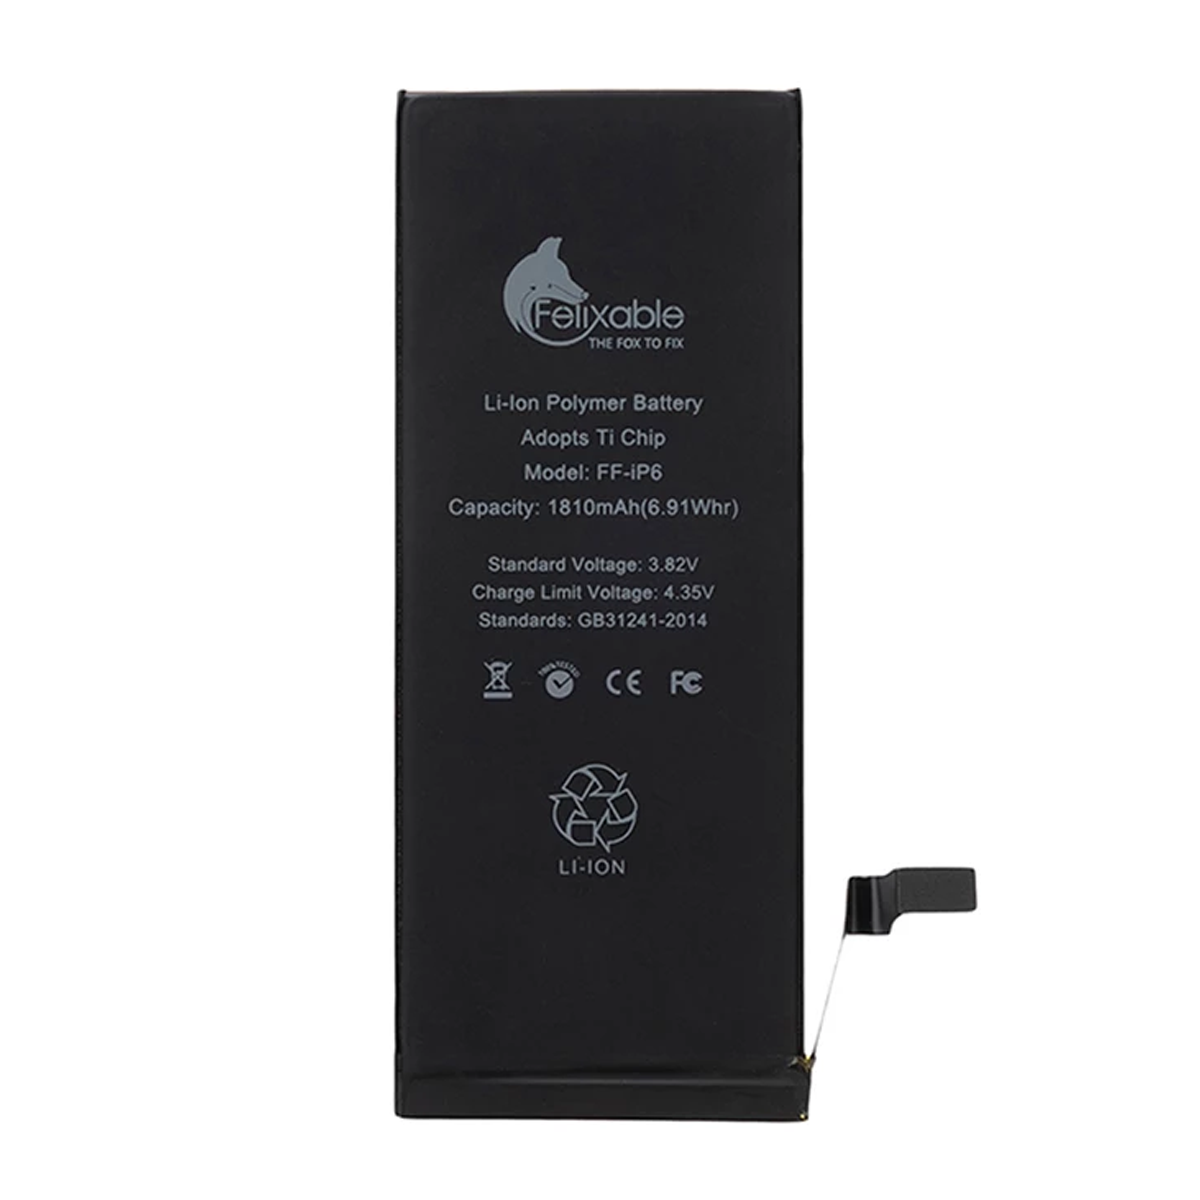 باتری فلیکسبل کد FF-iP6 مناسب برای گوشی اپل iPhone 6